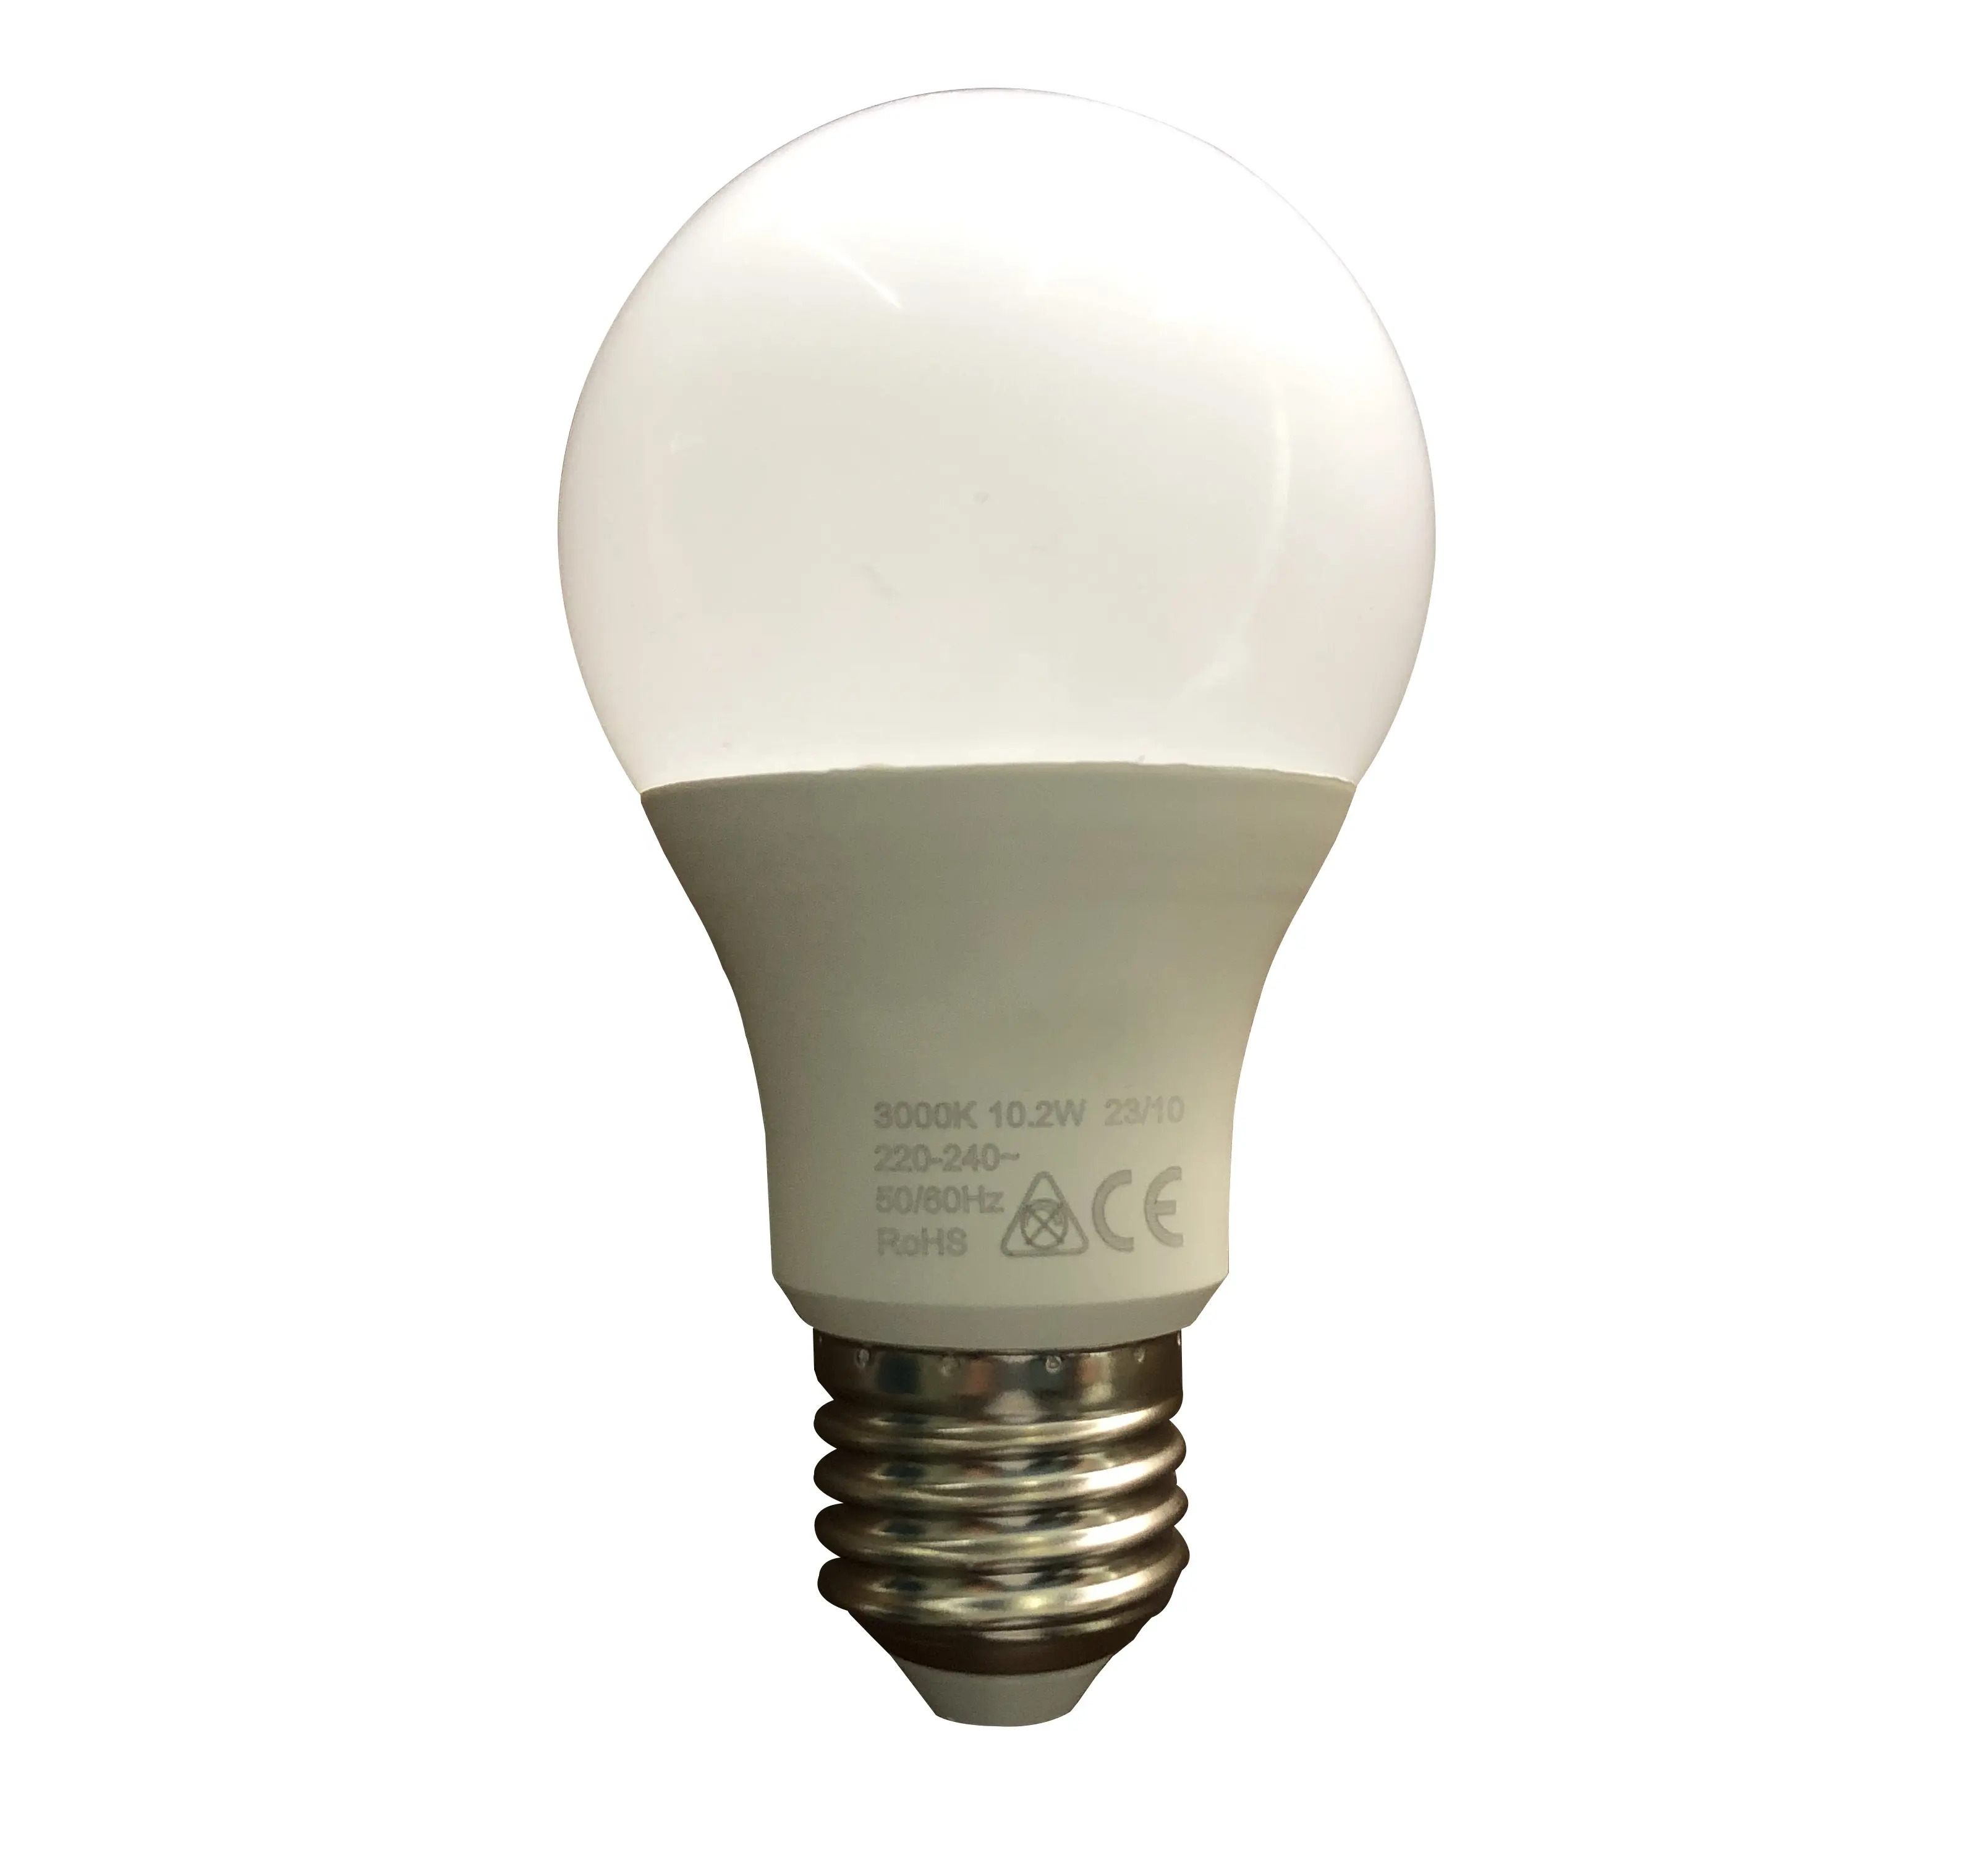 Vendita calda illuminazione interna risparmio energetico E27 10W 3000K A60 BULBO lampadina a LED